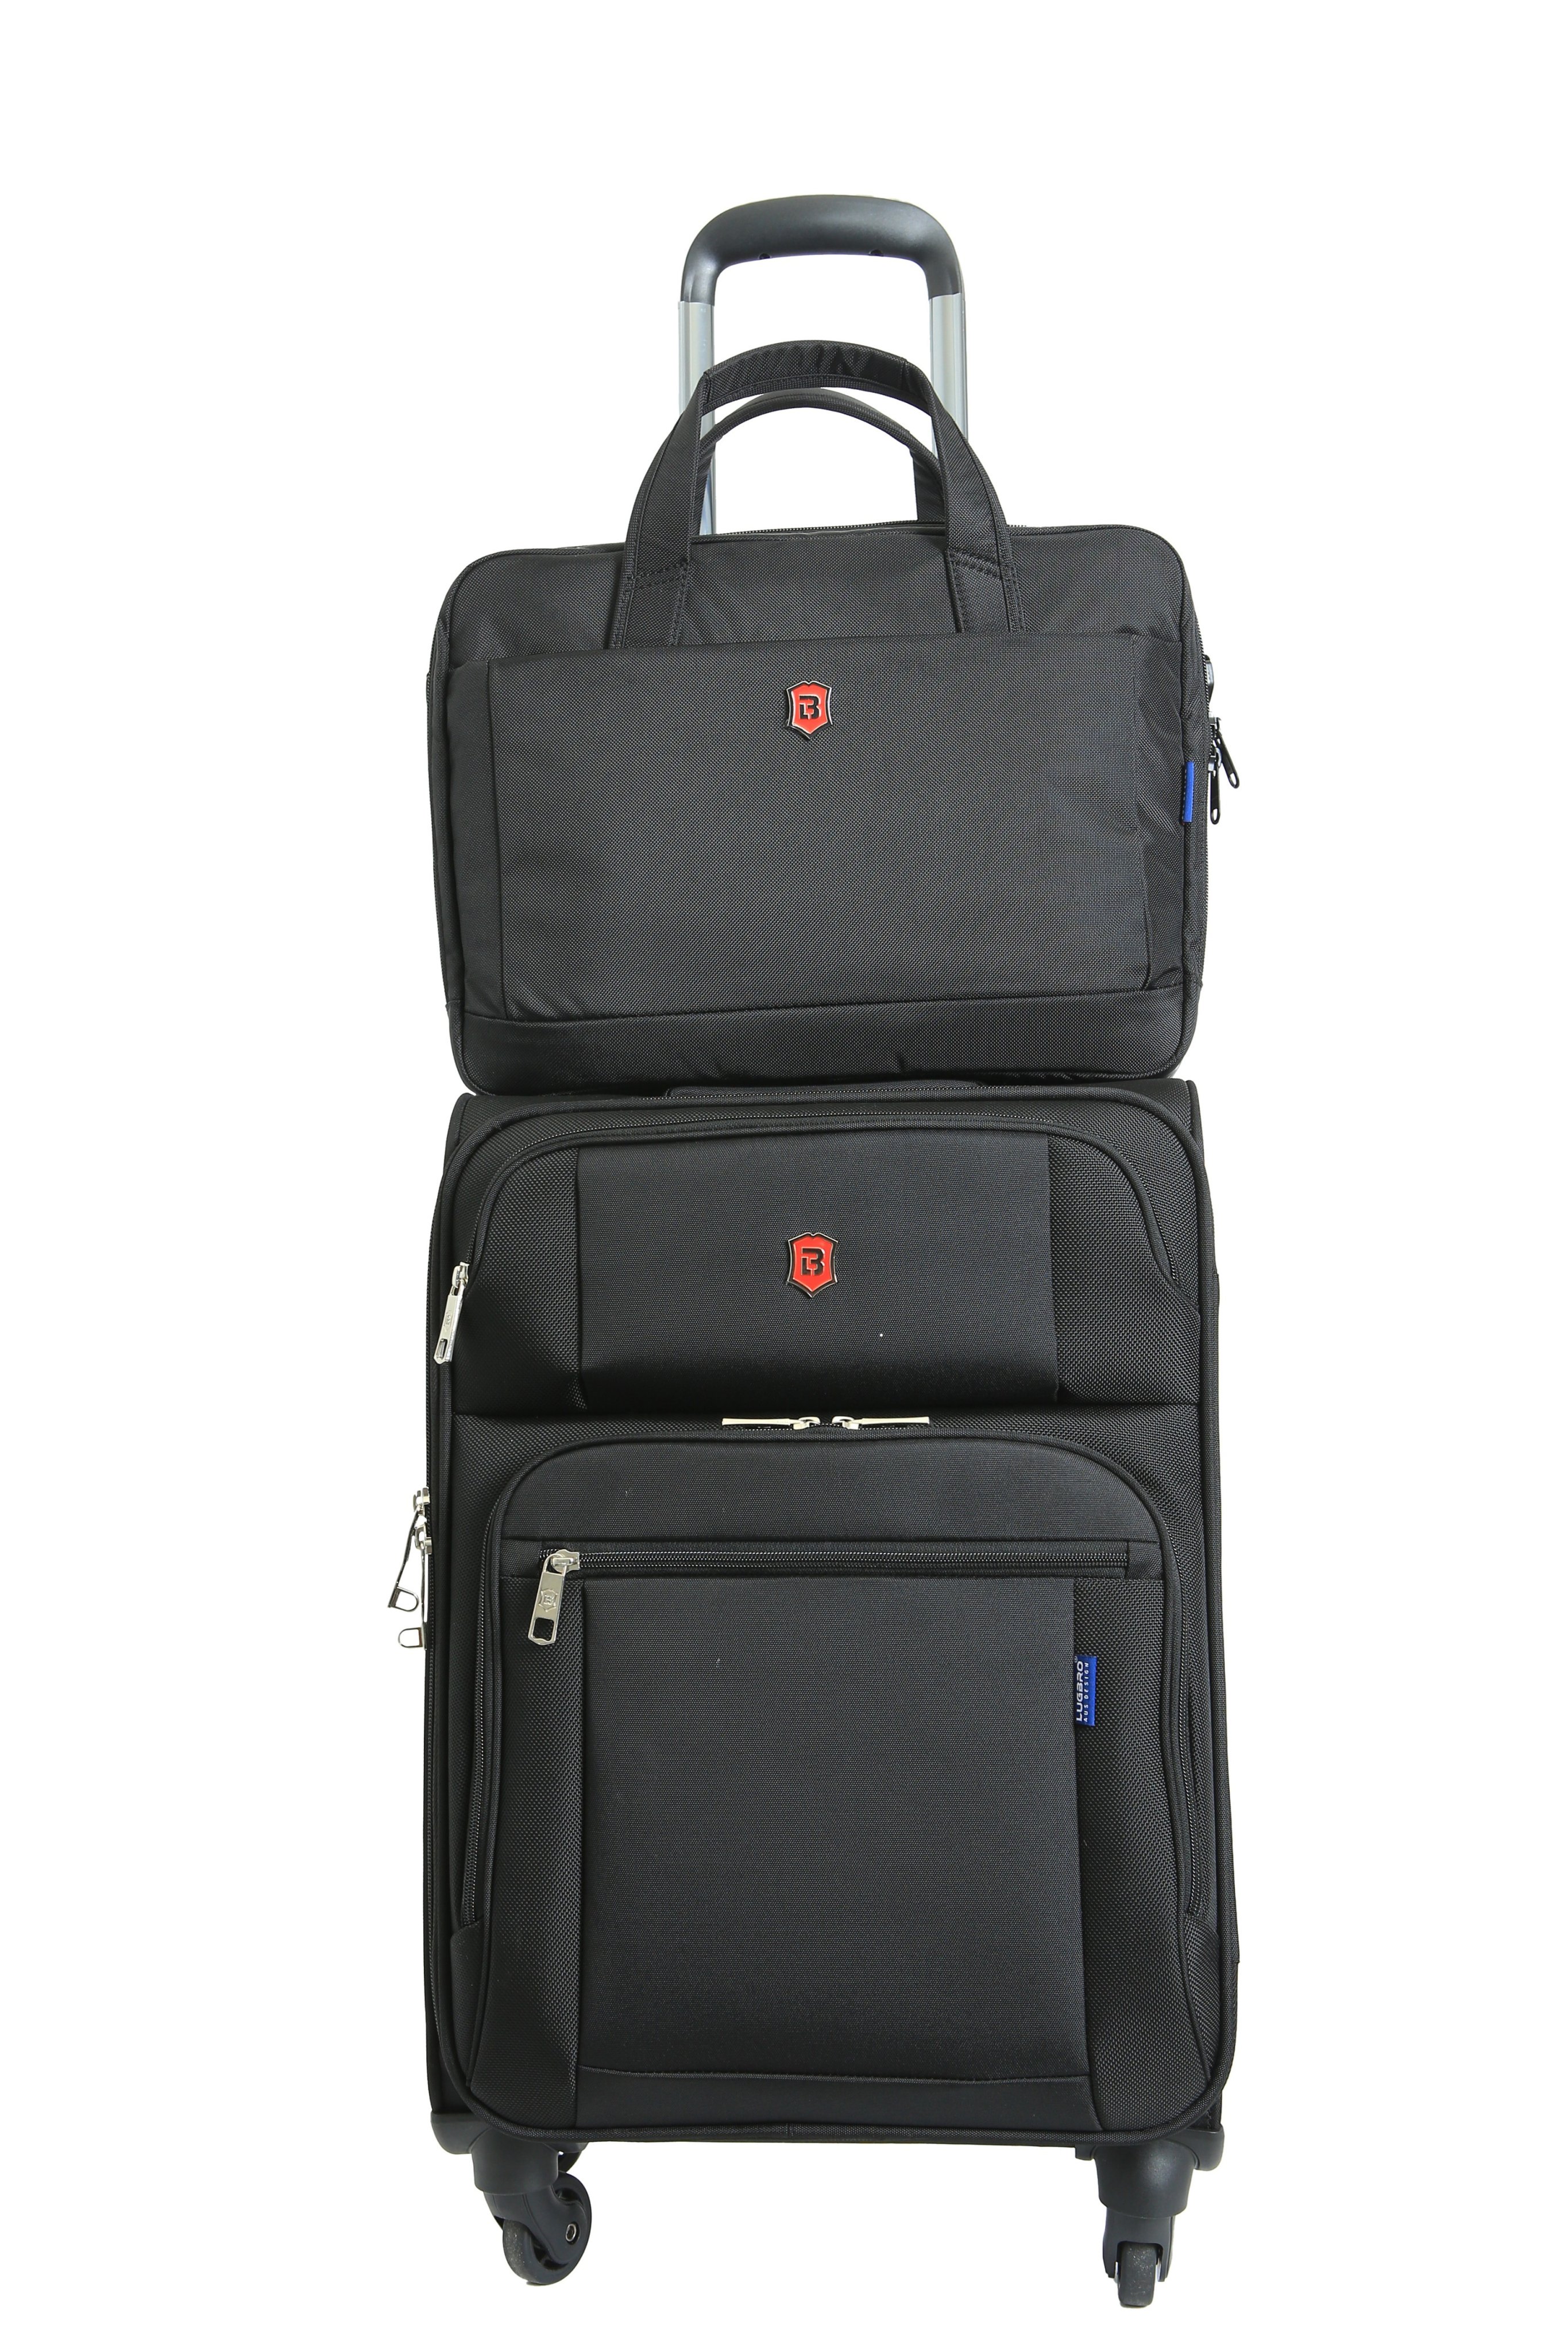 Bộ sản phẩm vali và túi - Vali Balo Túi Xách LUGBRO - Công Ty TNHH LUGBRO